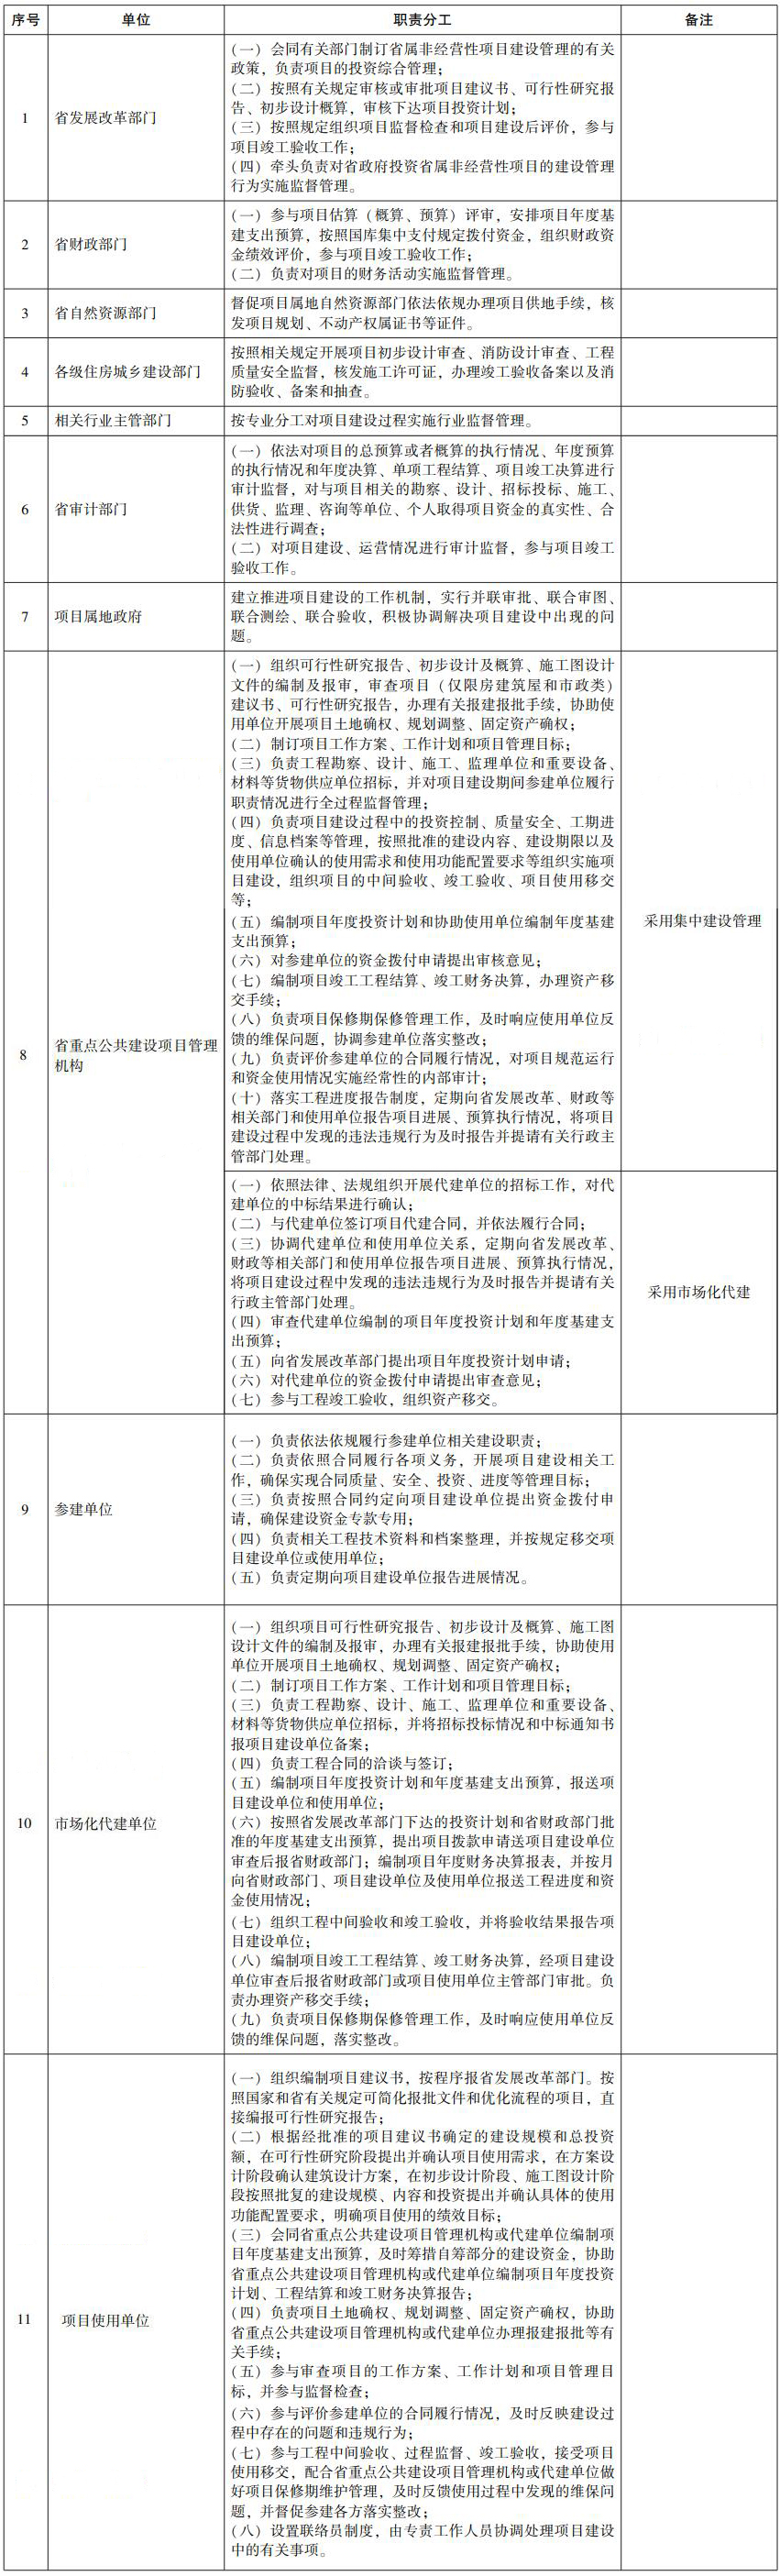 省政府投资省属非经营性项目建设管理职责分工表